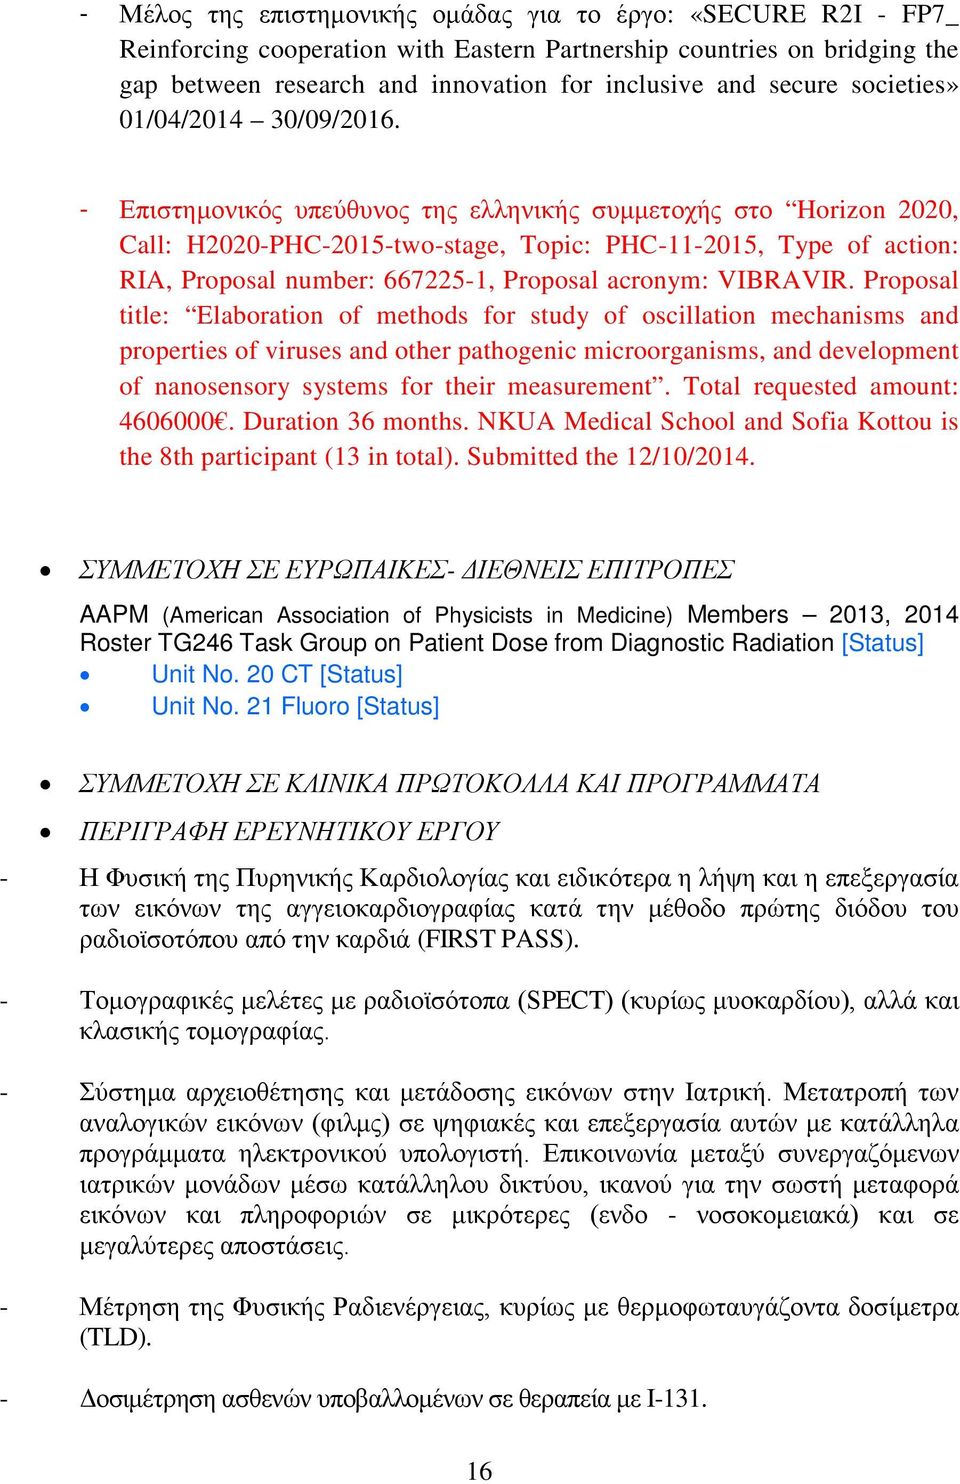 - Επιστημονικός υπεύθυνος της ελληνικής συμμετοχής στο Horizon 2020, Call: H2020-PHC-2015-two-stage, Topic: PHC-11-2015, Type of action: RIA, Proposal number: 667225-1, Proposal acronym: VIBRAVIR.